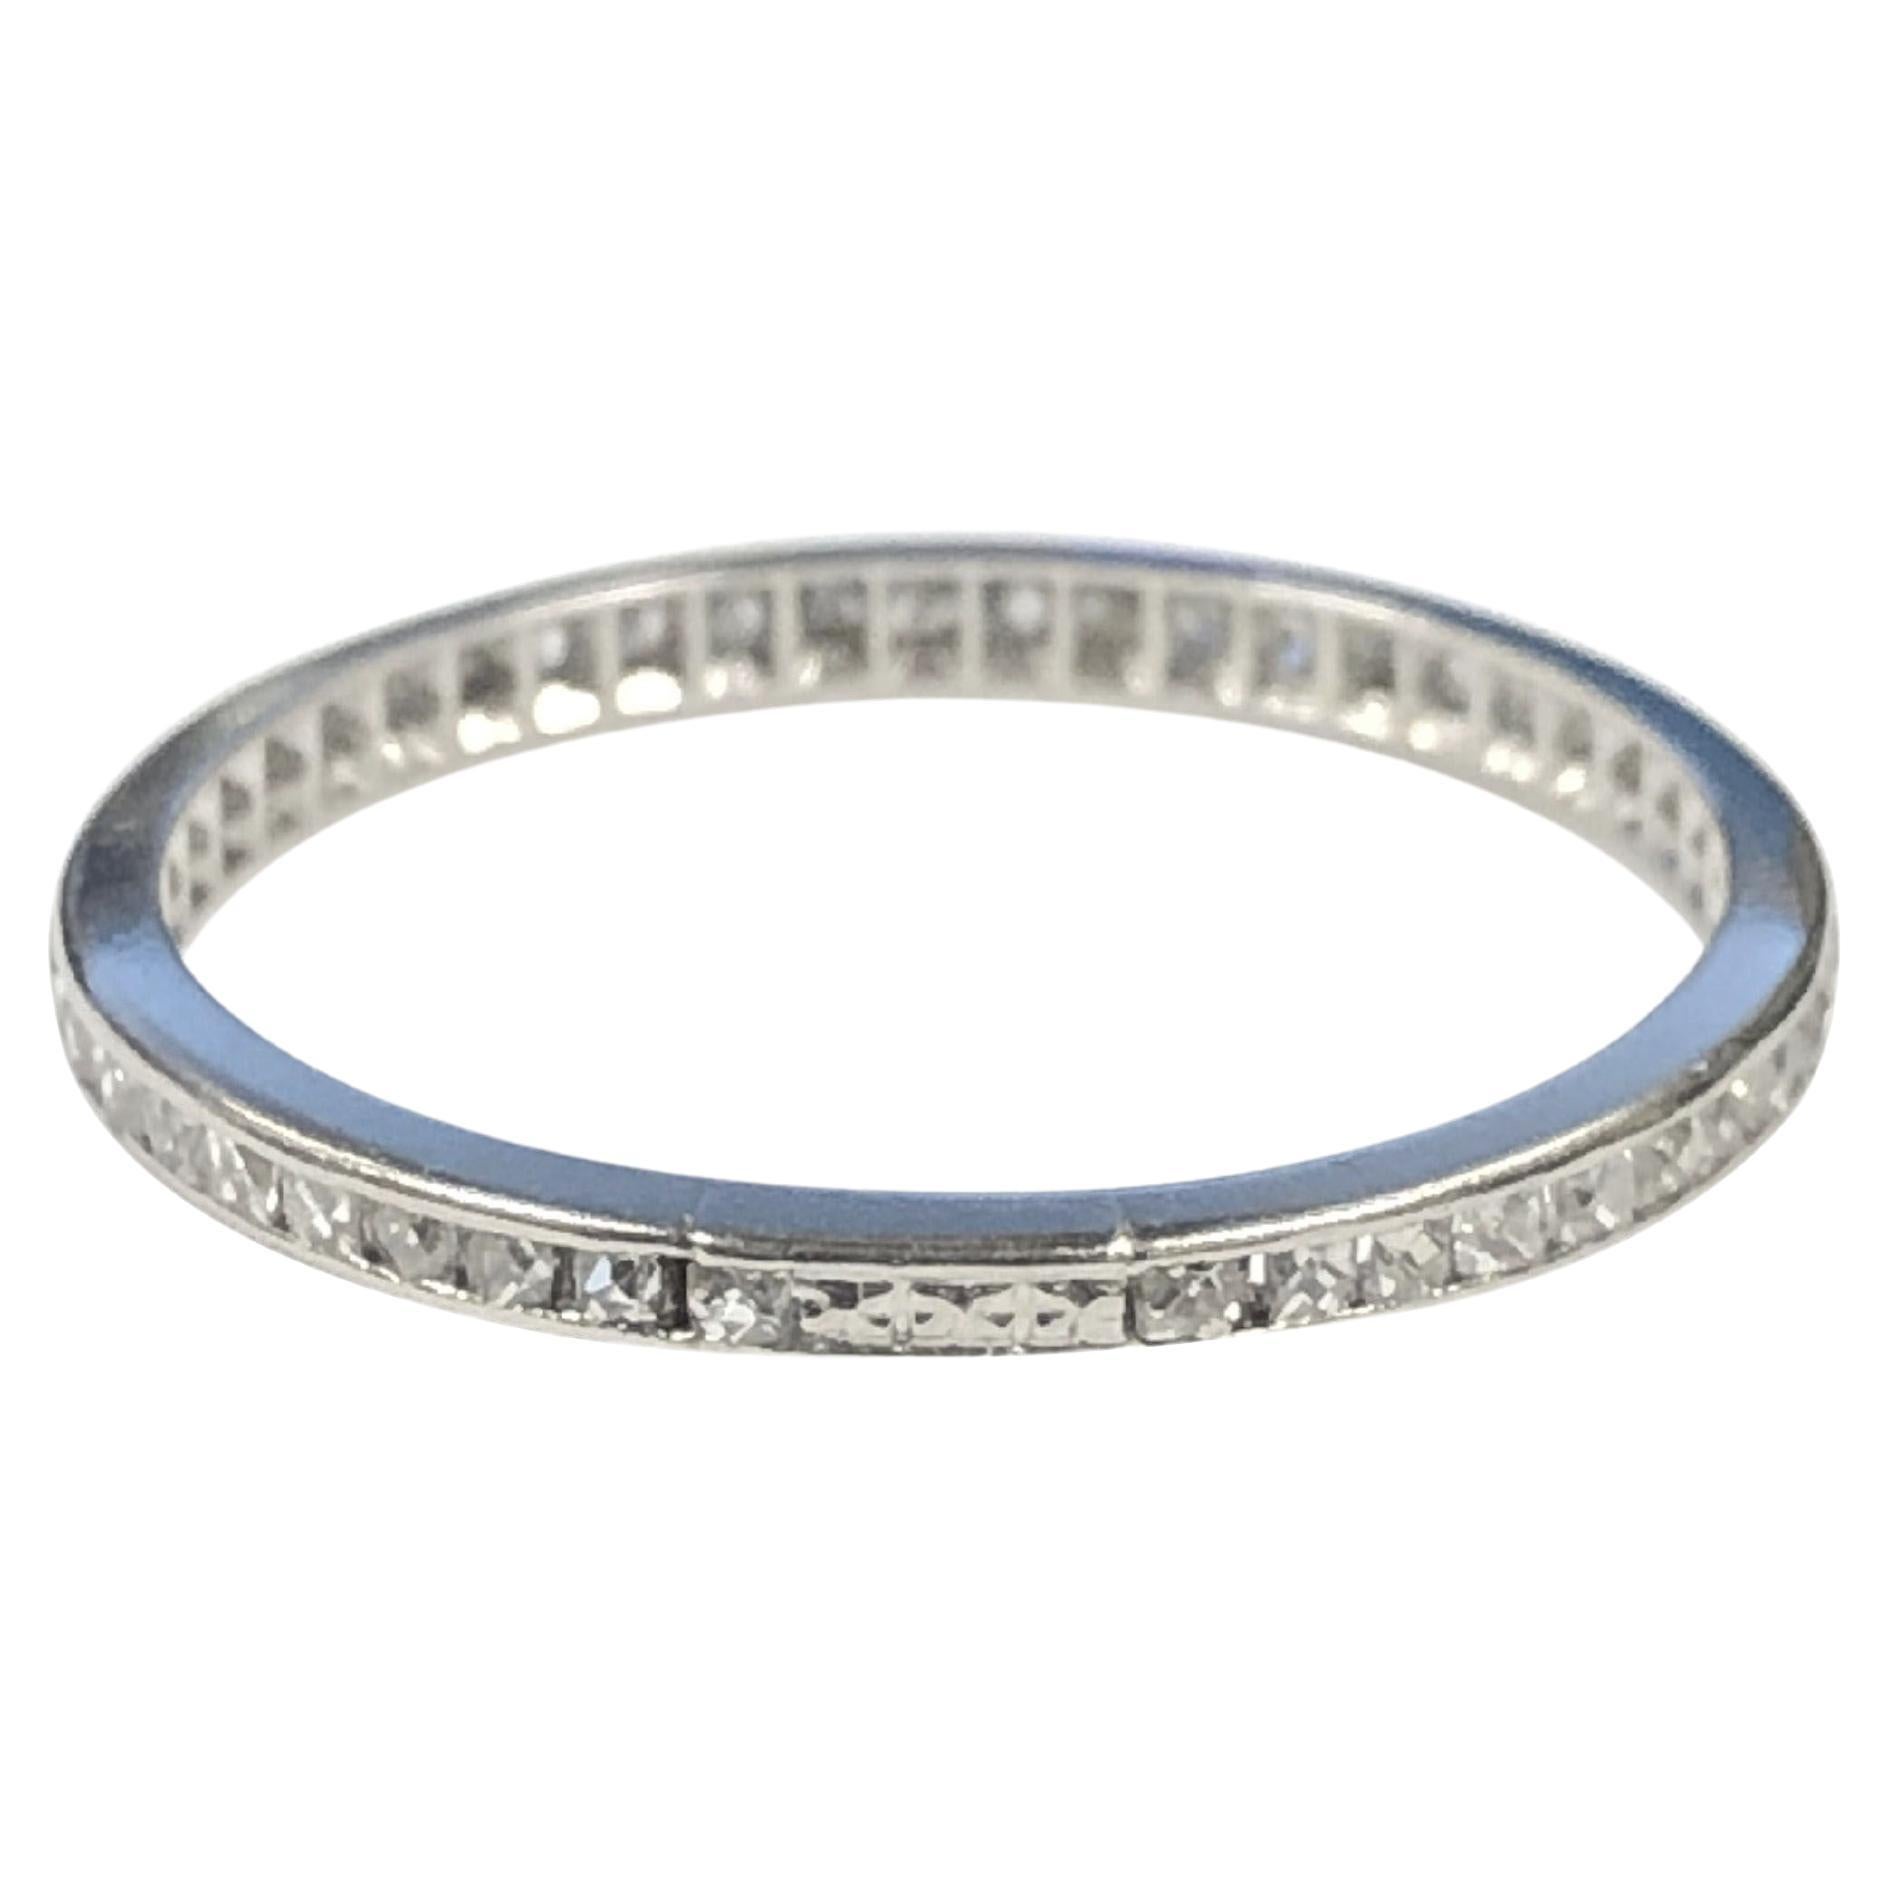 Circa 1920er Jahre Platin Eternity Band Ring, Messung 1,6 M.M. breit, Kanal mit alten Französisch Cut Diamanten in Höhe von insgesamt etwa .70 Karat gesetzt. Fingergröße 6 1/4. 